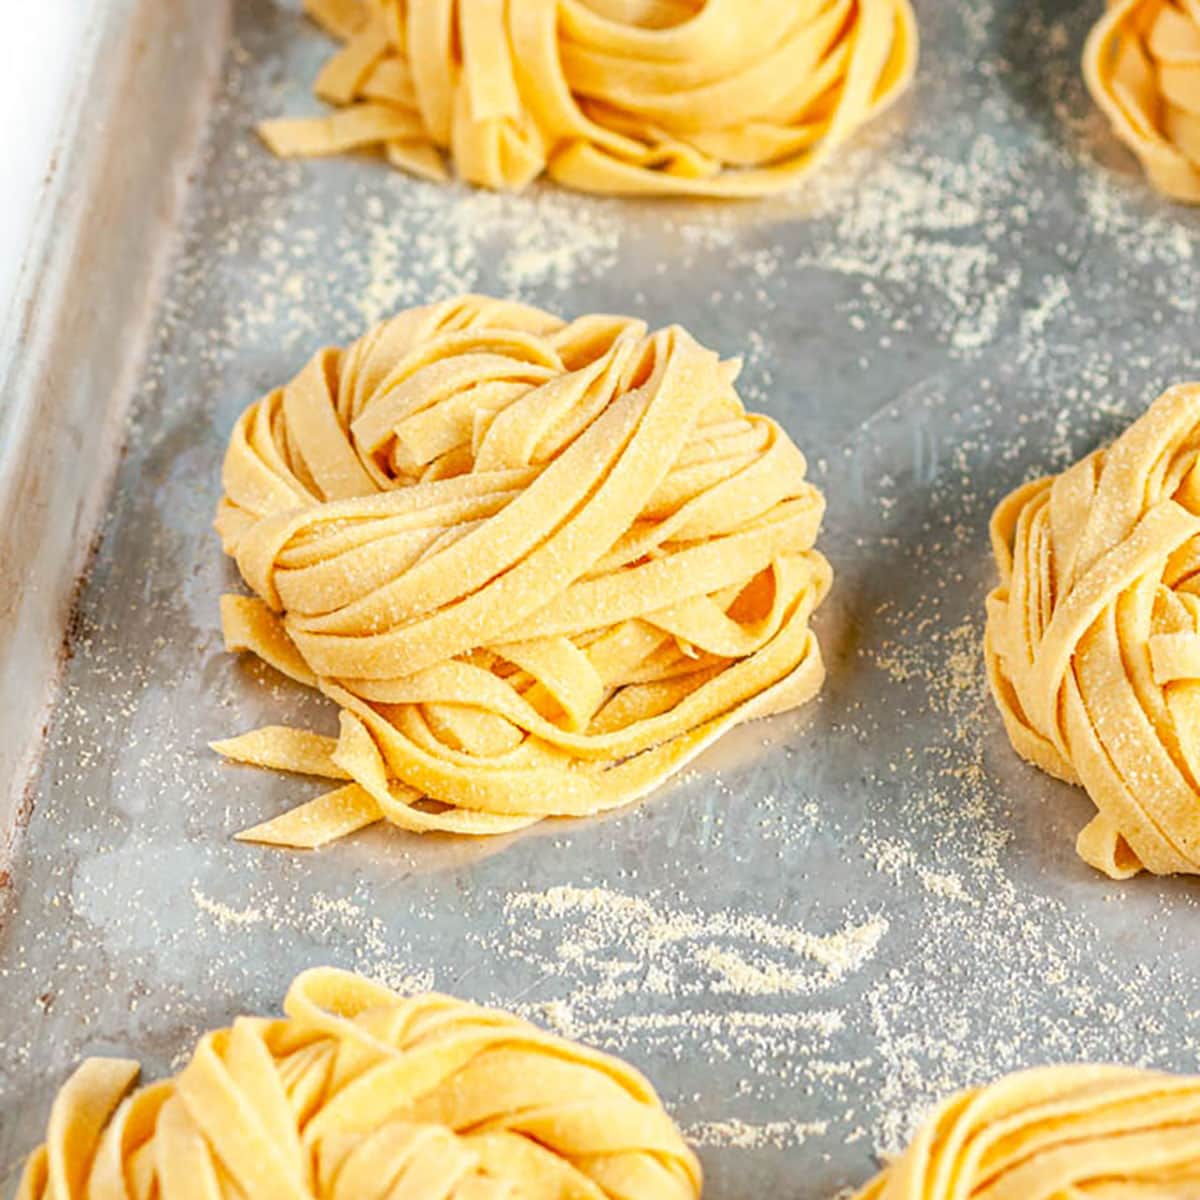 https://www.aberdeenskitchen.com/wp-content/uploads/2020/09/Homemade-Pasta-Dough-Recipe-3-FI-Thumbnail-1200X1200.jpg